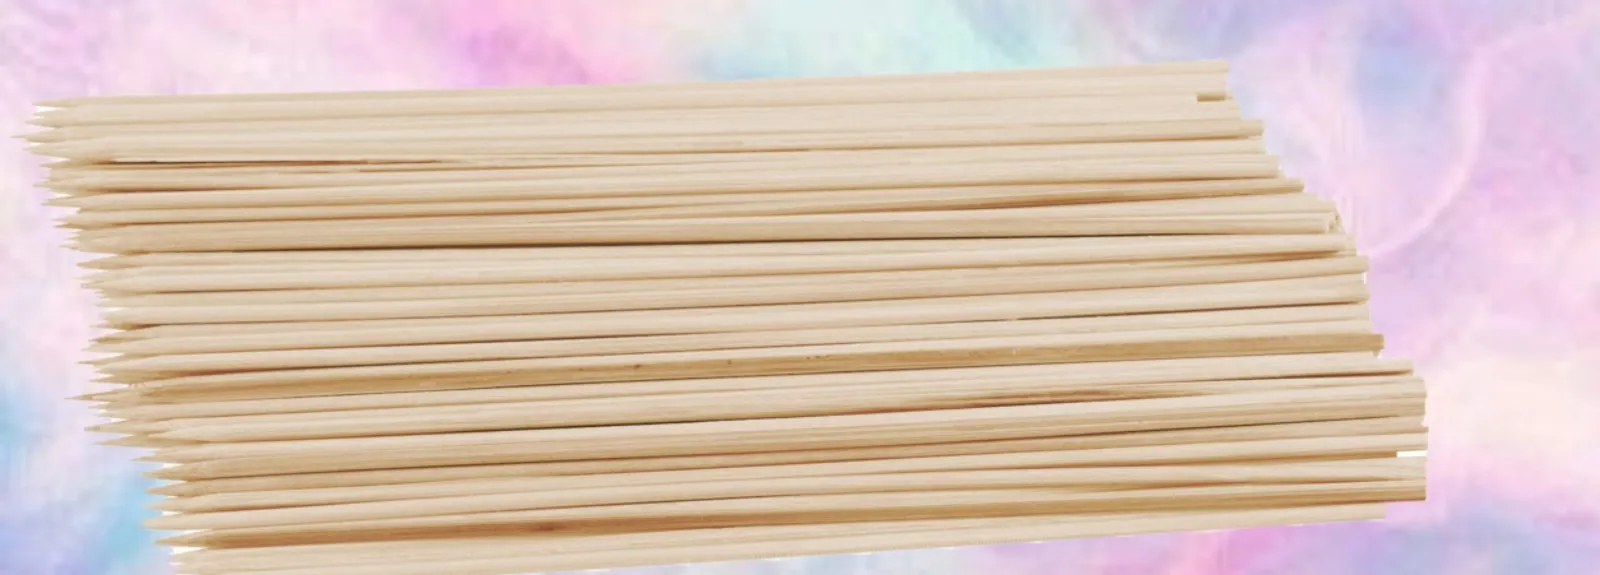 100 броя Бамбукови клечки за захарен памук 25см 2